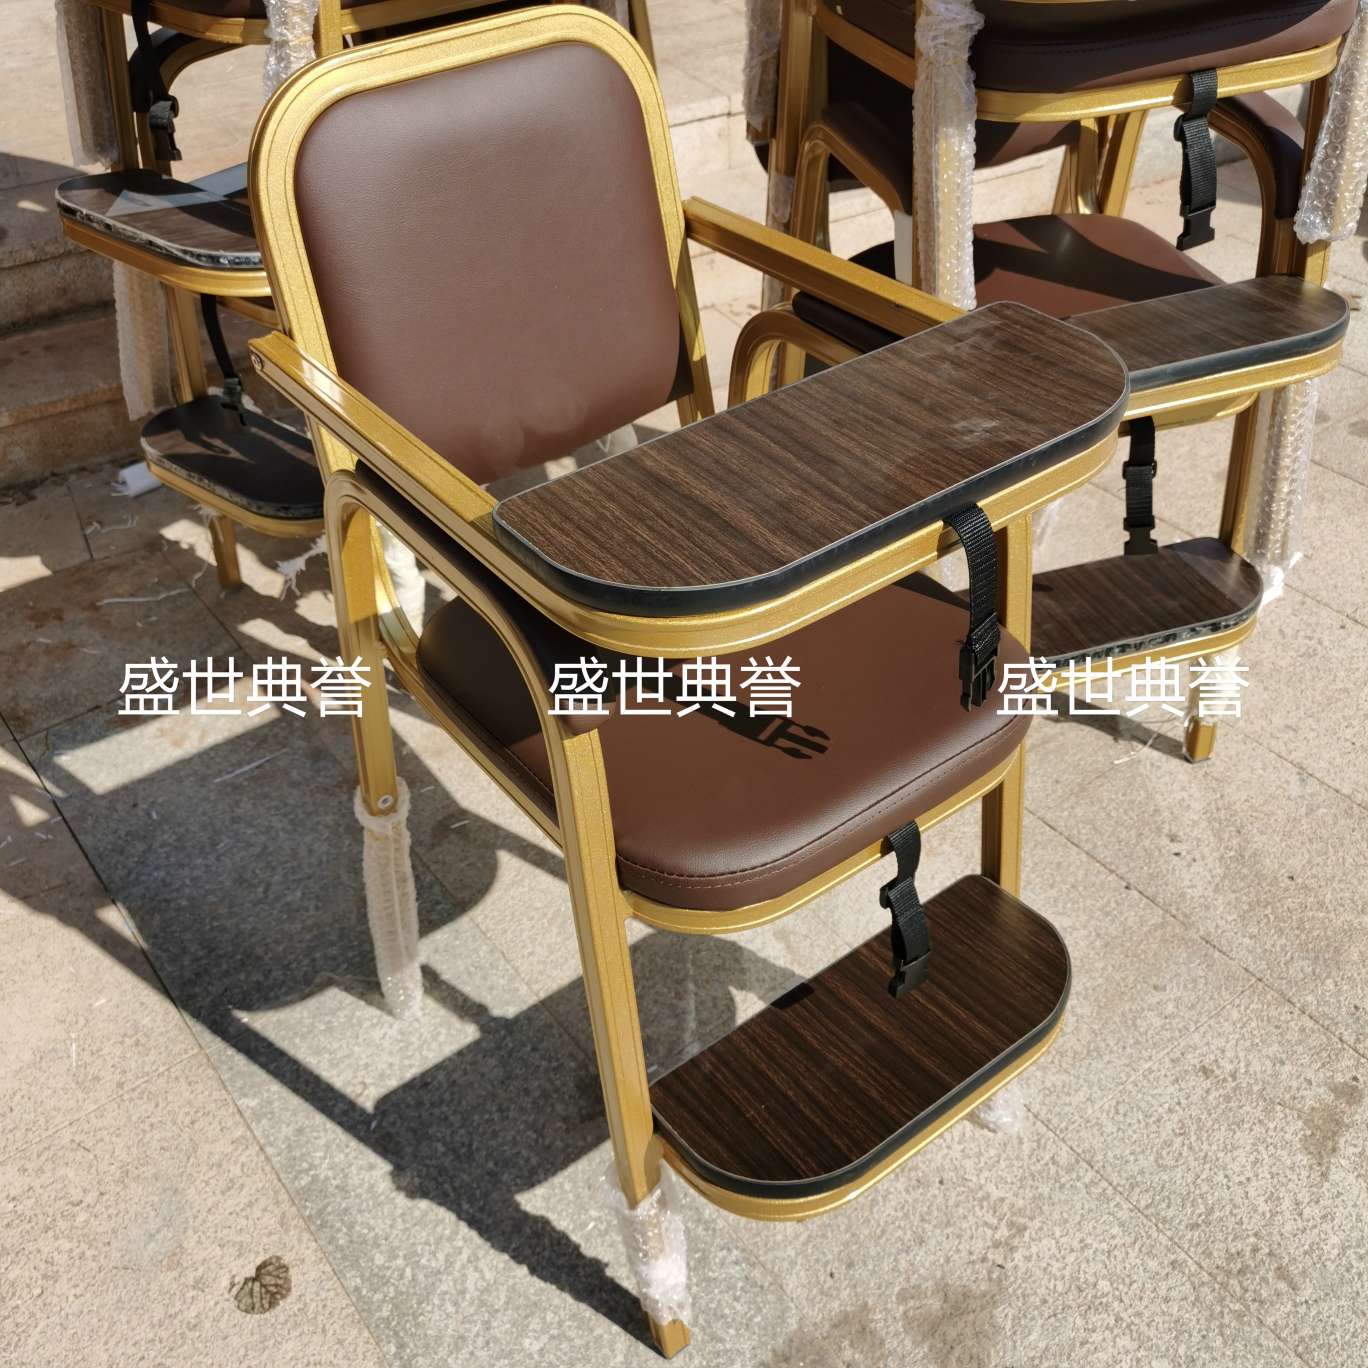 杭州国际宴会中心宝宝餐椅酒店宴会厅铝合金宝宝椅餐厅包厢儿童椅产品图